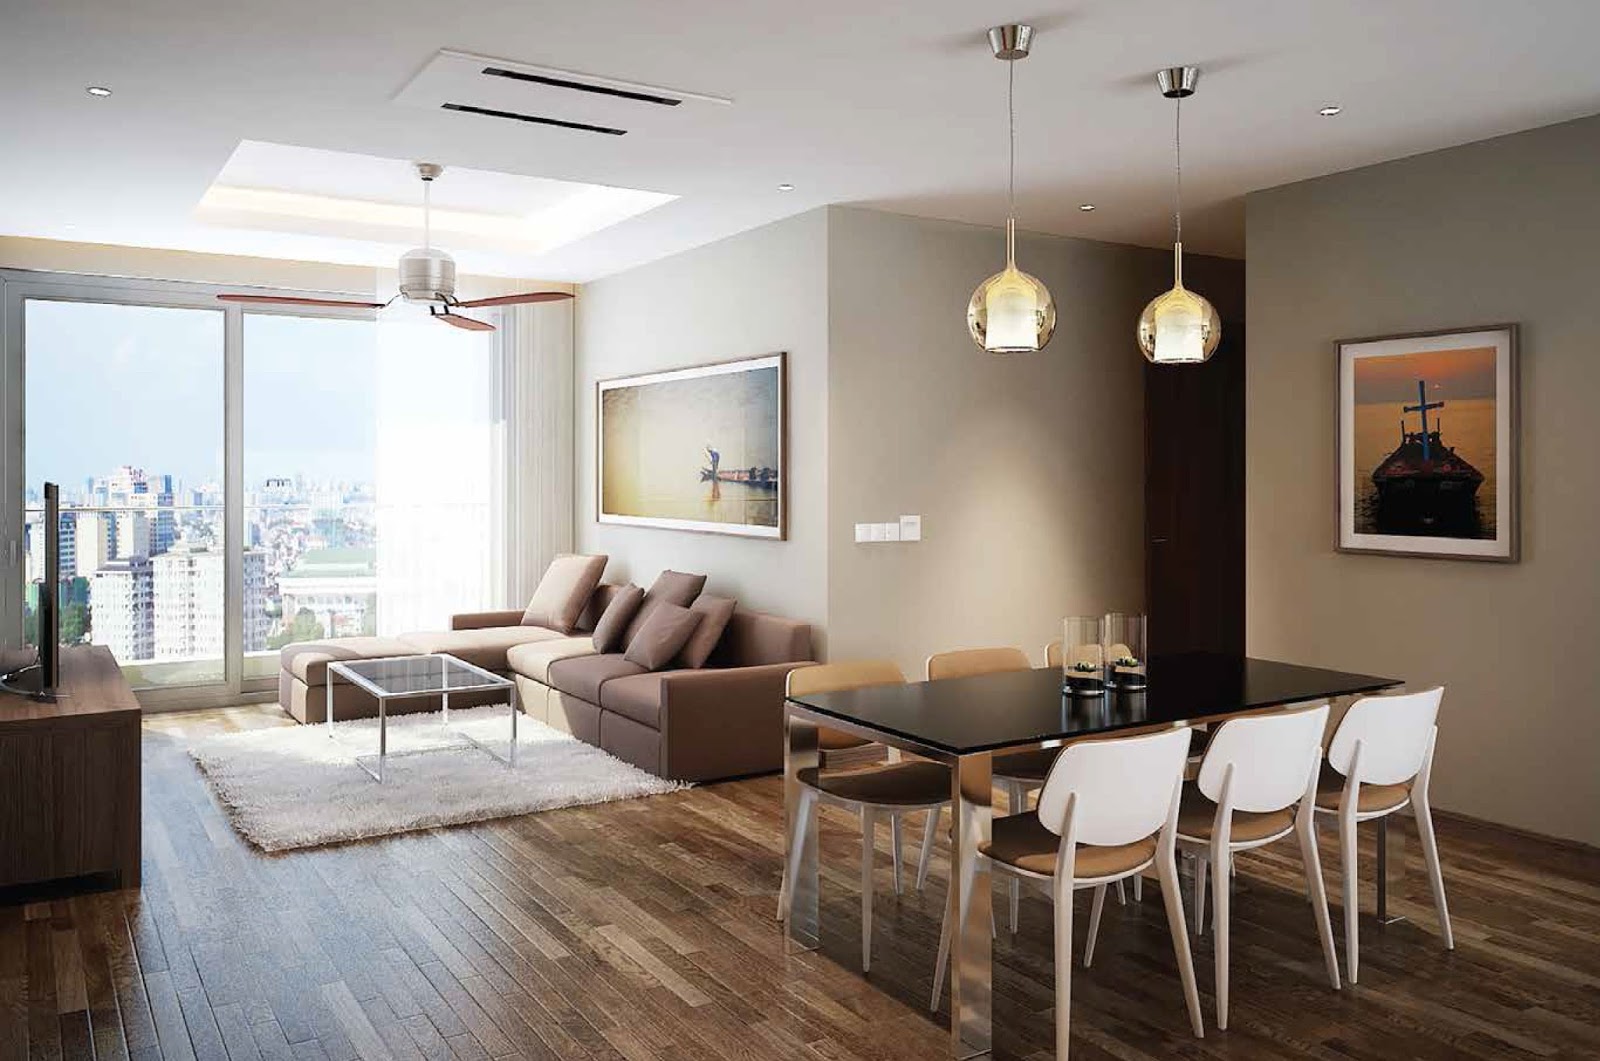 Đánh giá về ưu điểm thiết kế tại chung cư Phú Mỹ Complex